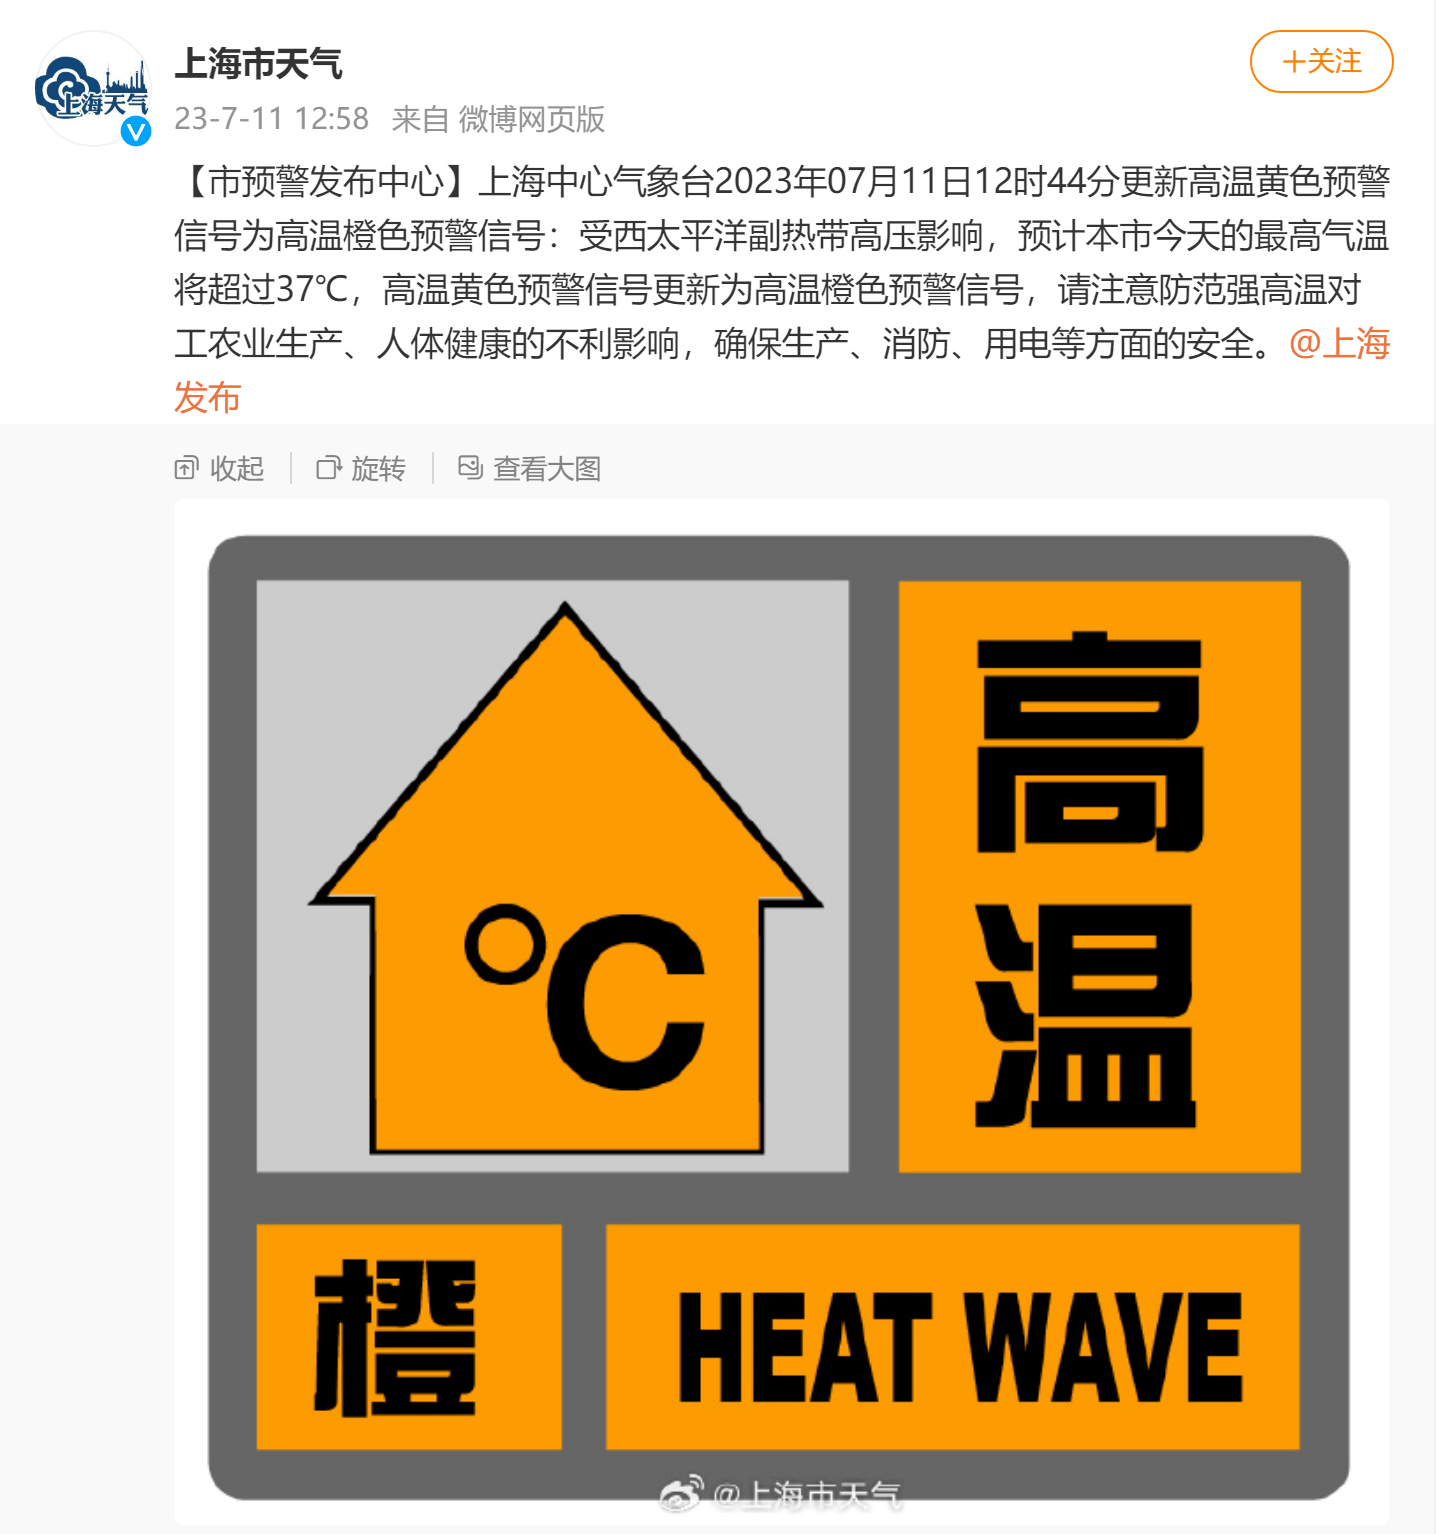 上海升级发布高温橙色预警,预计最高气温将超过37℃